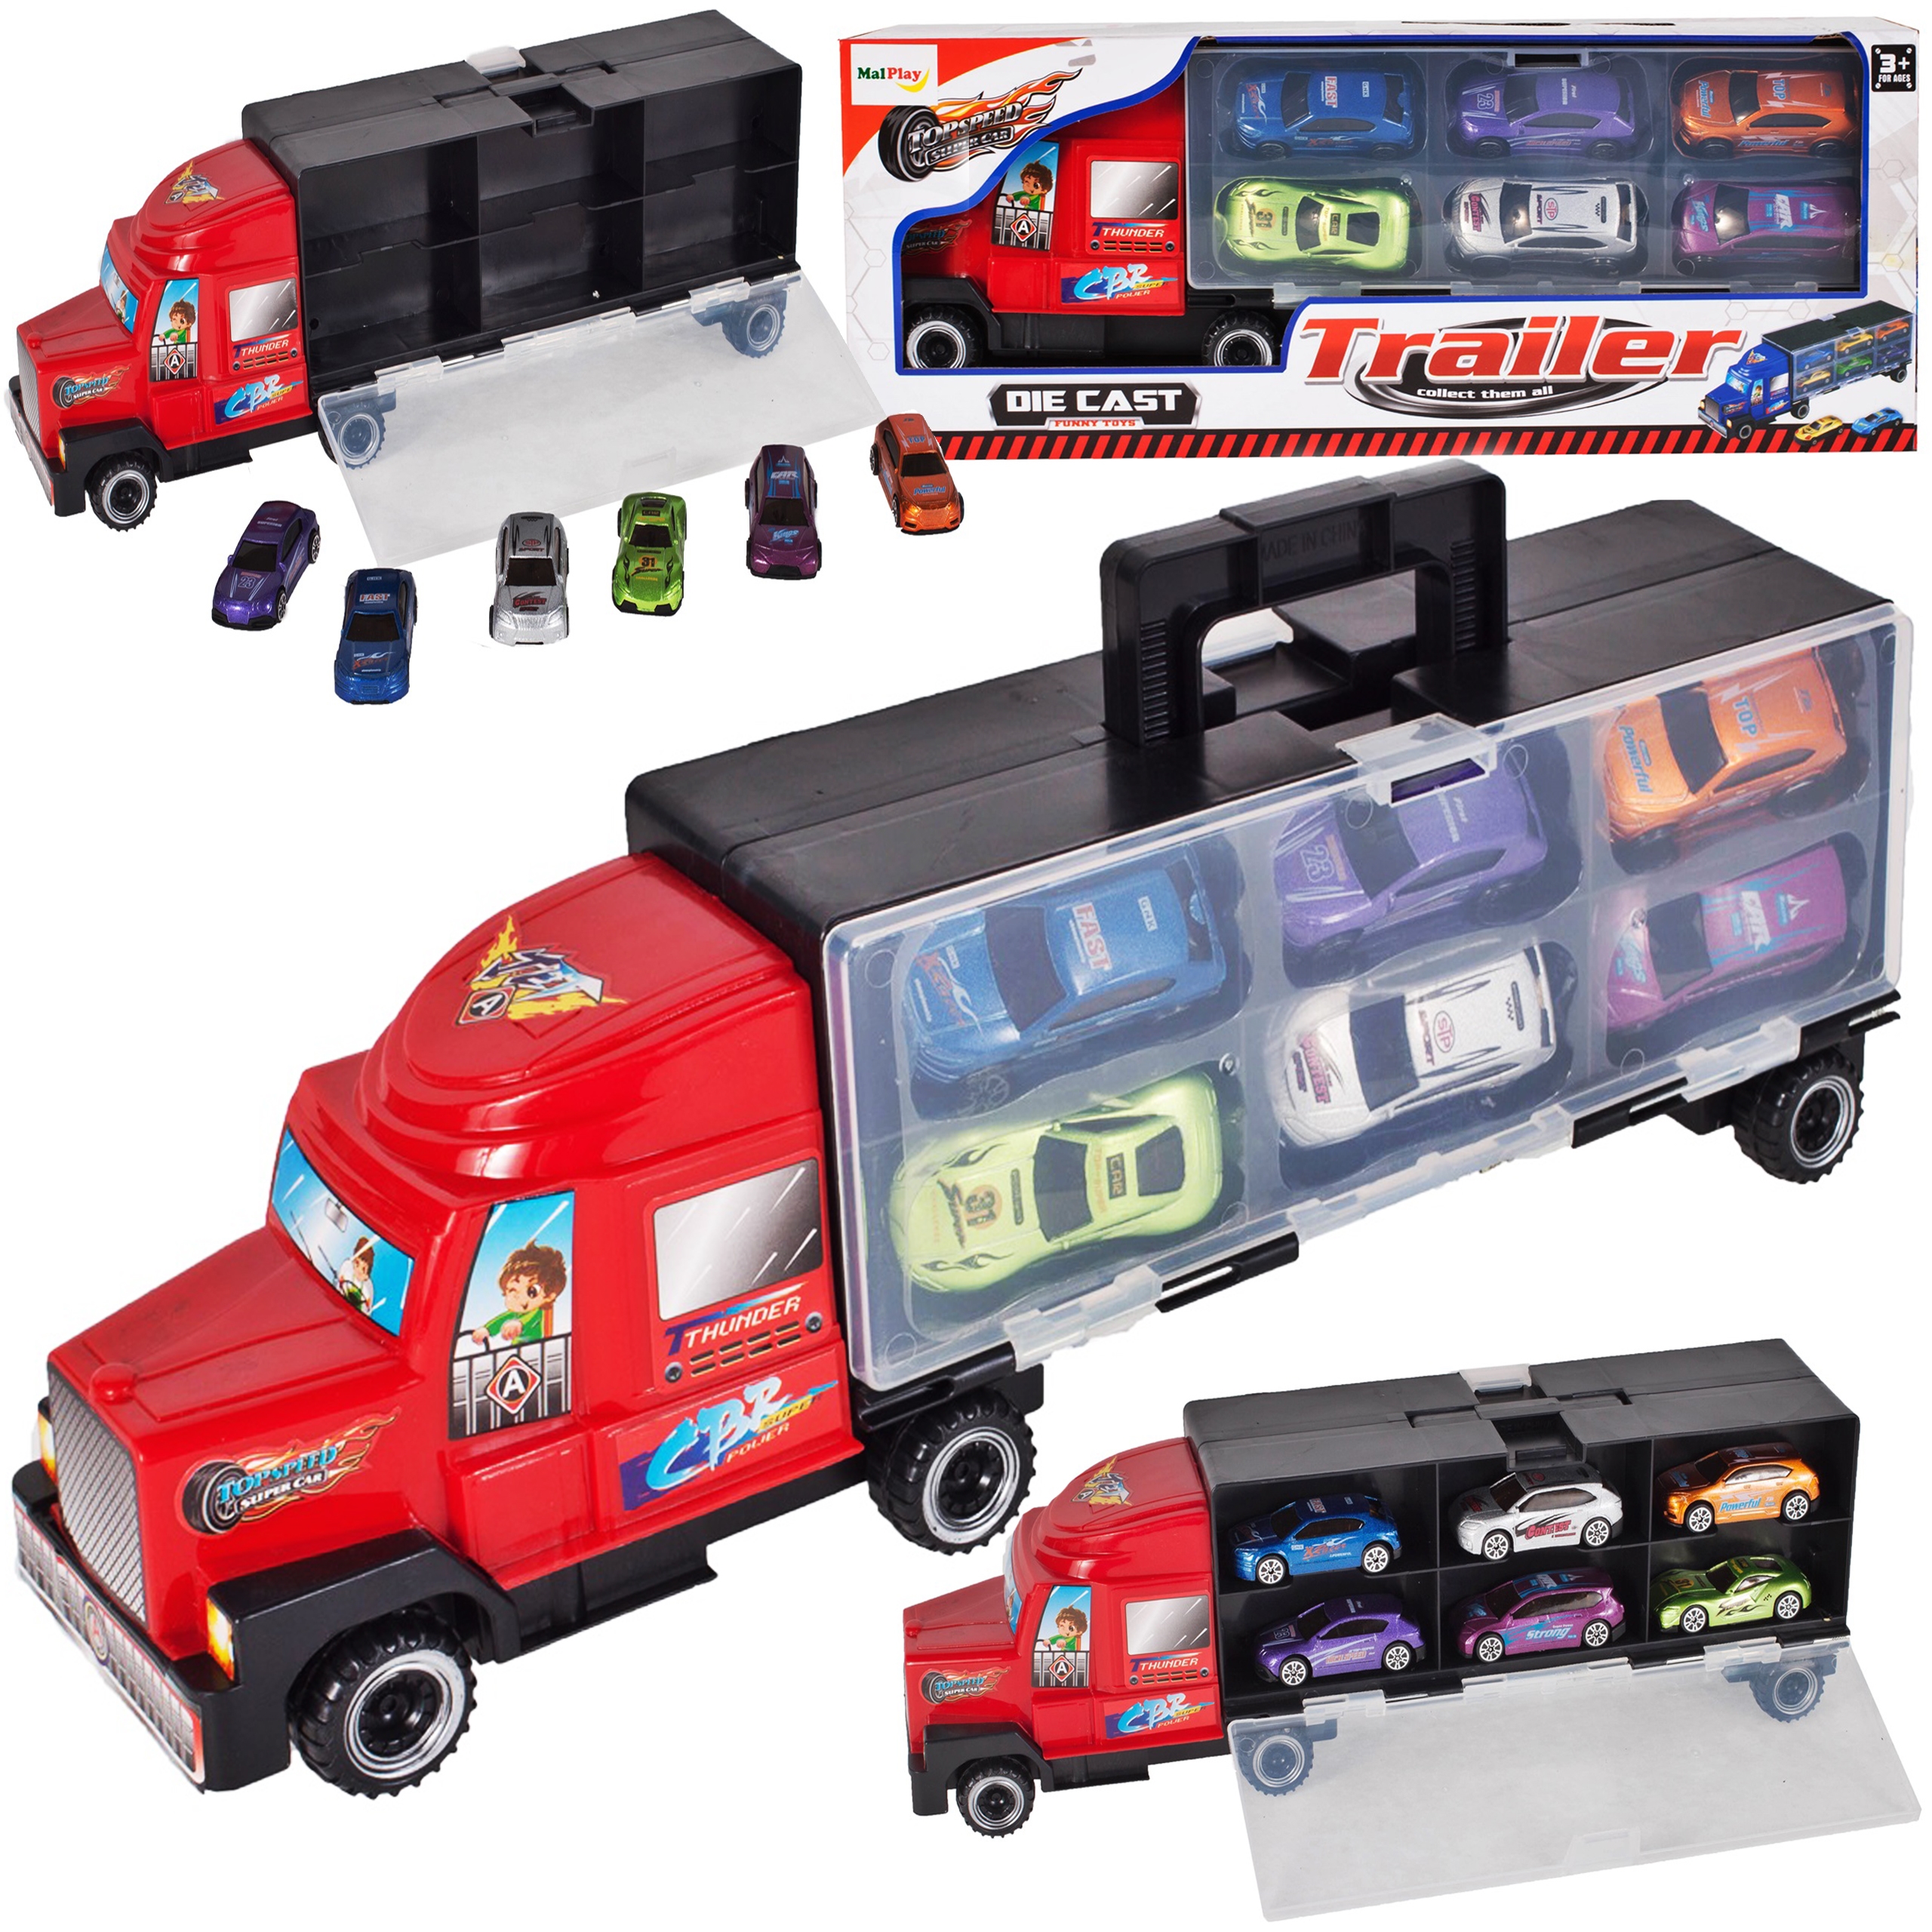 Set de Masinute, Red Truck, Camion cu 6 Masinute Incluse, 40 cm Lungime, cu Panou Transparent, Maner pentru Transport, 3ani, Rosu